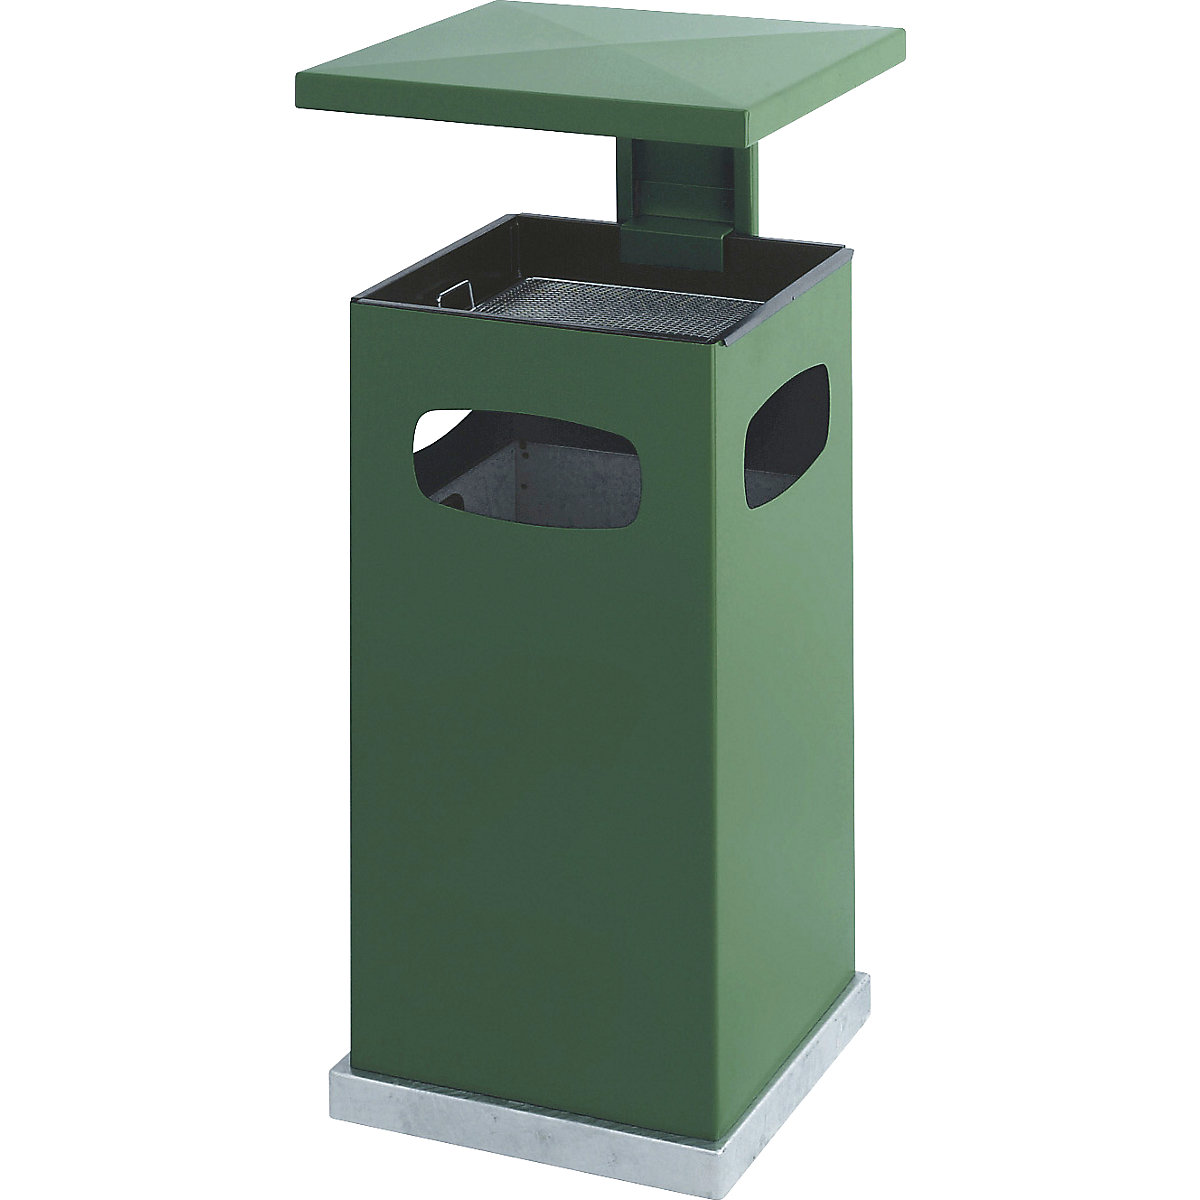 Colector de residuos con cenicero interior y tejadillo, capacidad 38 l, A x H x P 395 x 910 x 395 mm, verde musgo